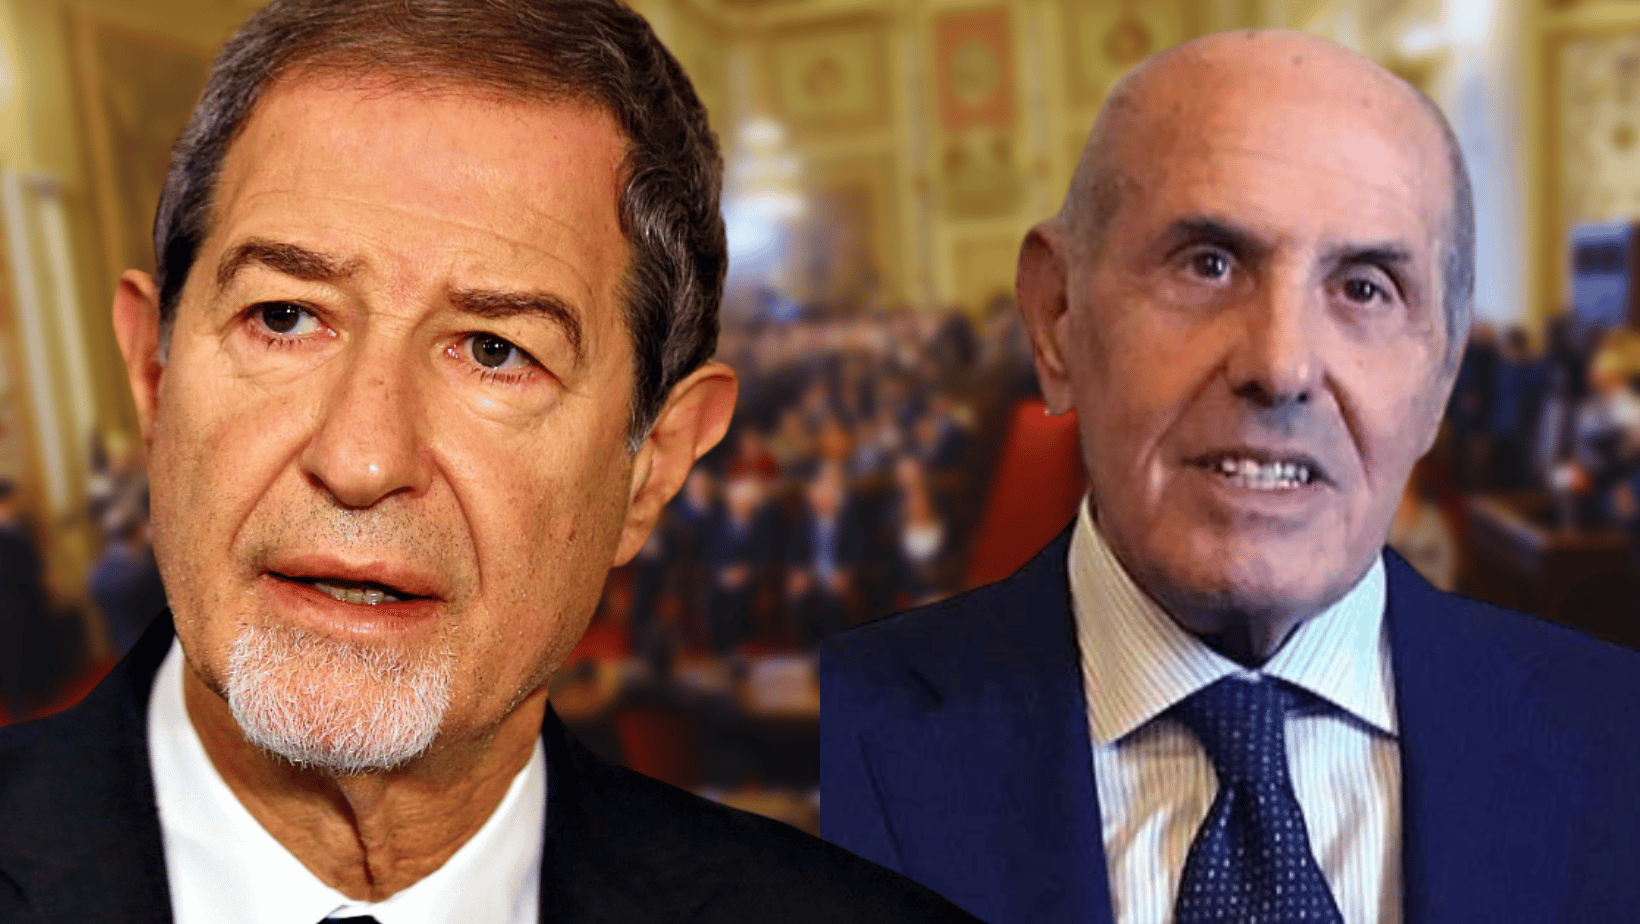 Il cordoglio del presidente Musumeci per la morte di Riccardo Savona: “Scompare politico autorevole”